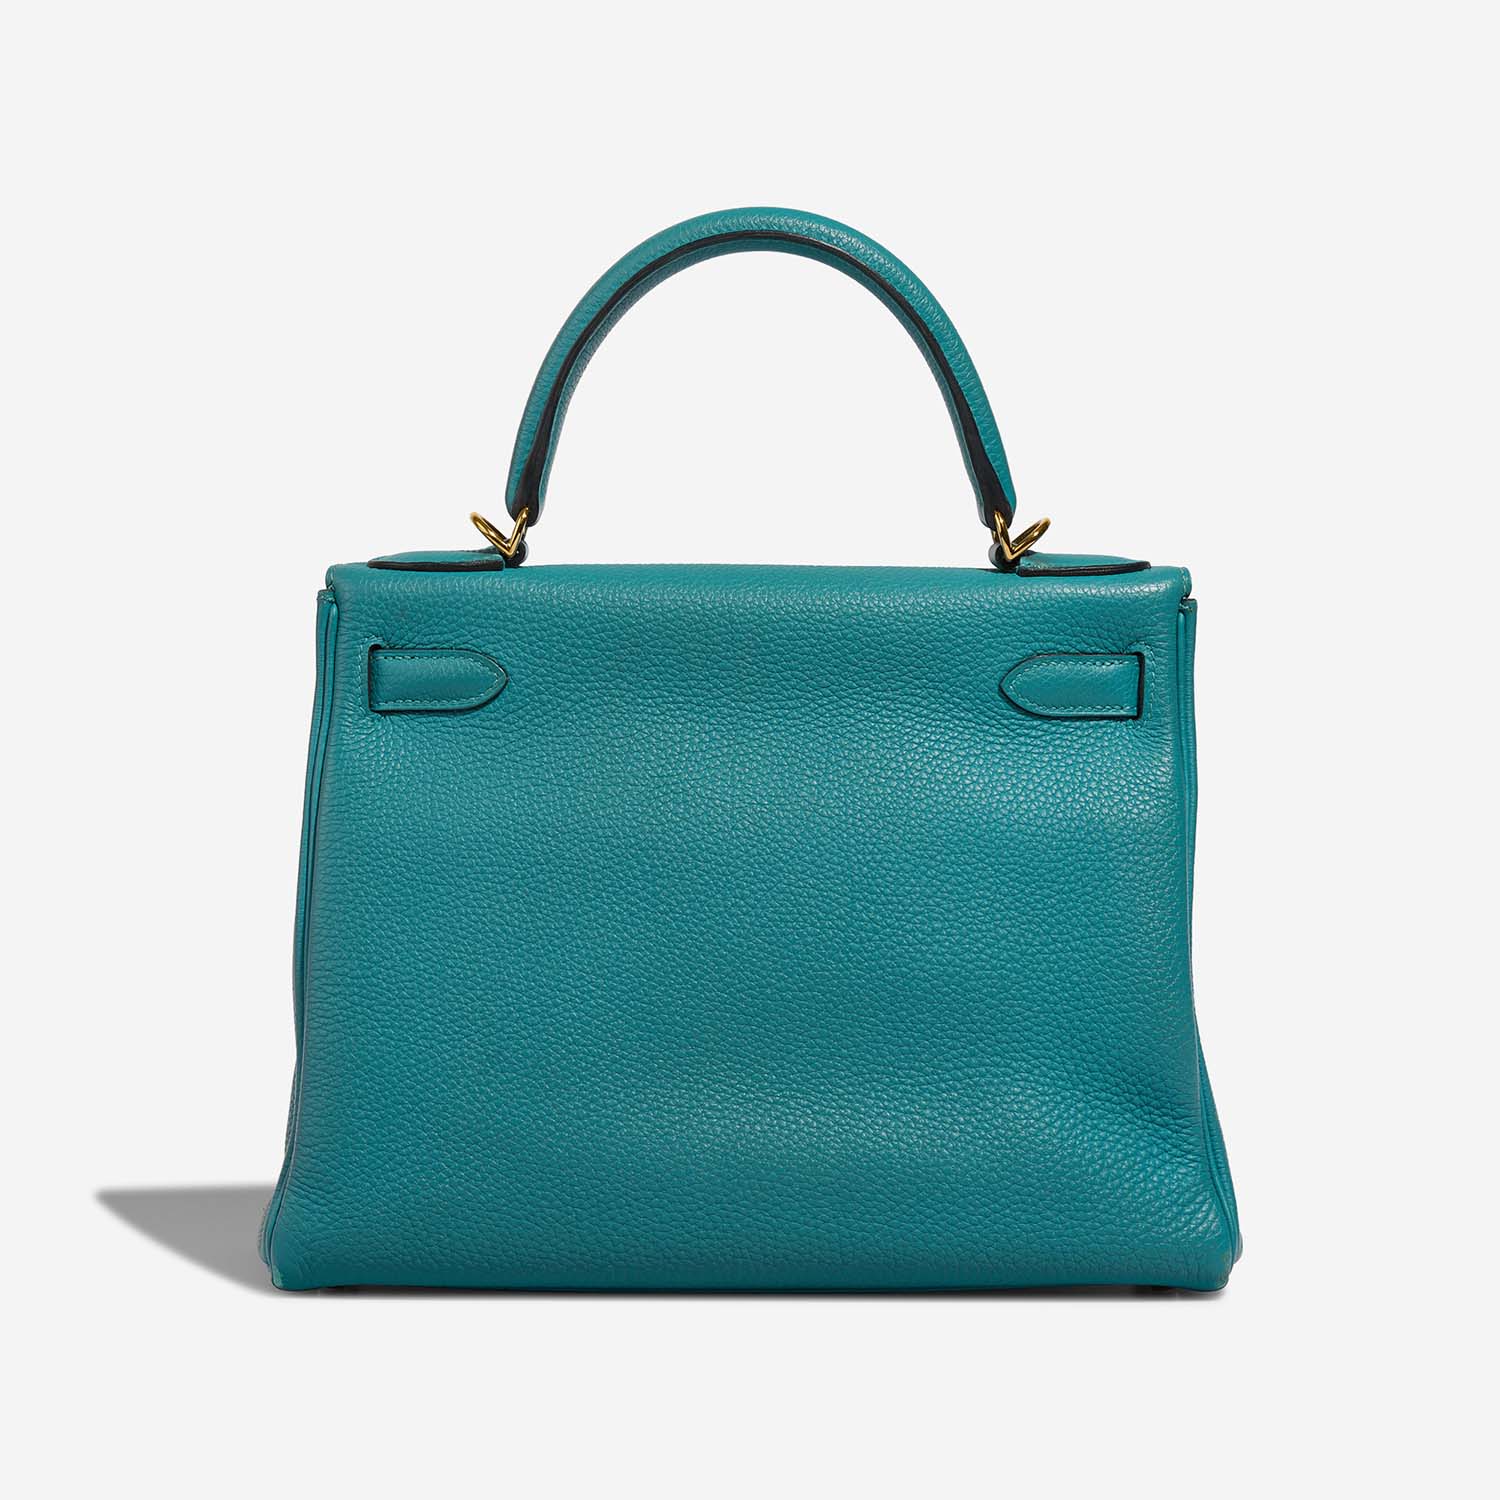 Hermès Kelly 28 BleuPaon Back | Verkaufen Sie Ihre Designertasche auf Saclab.com